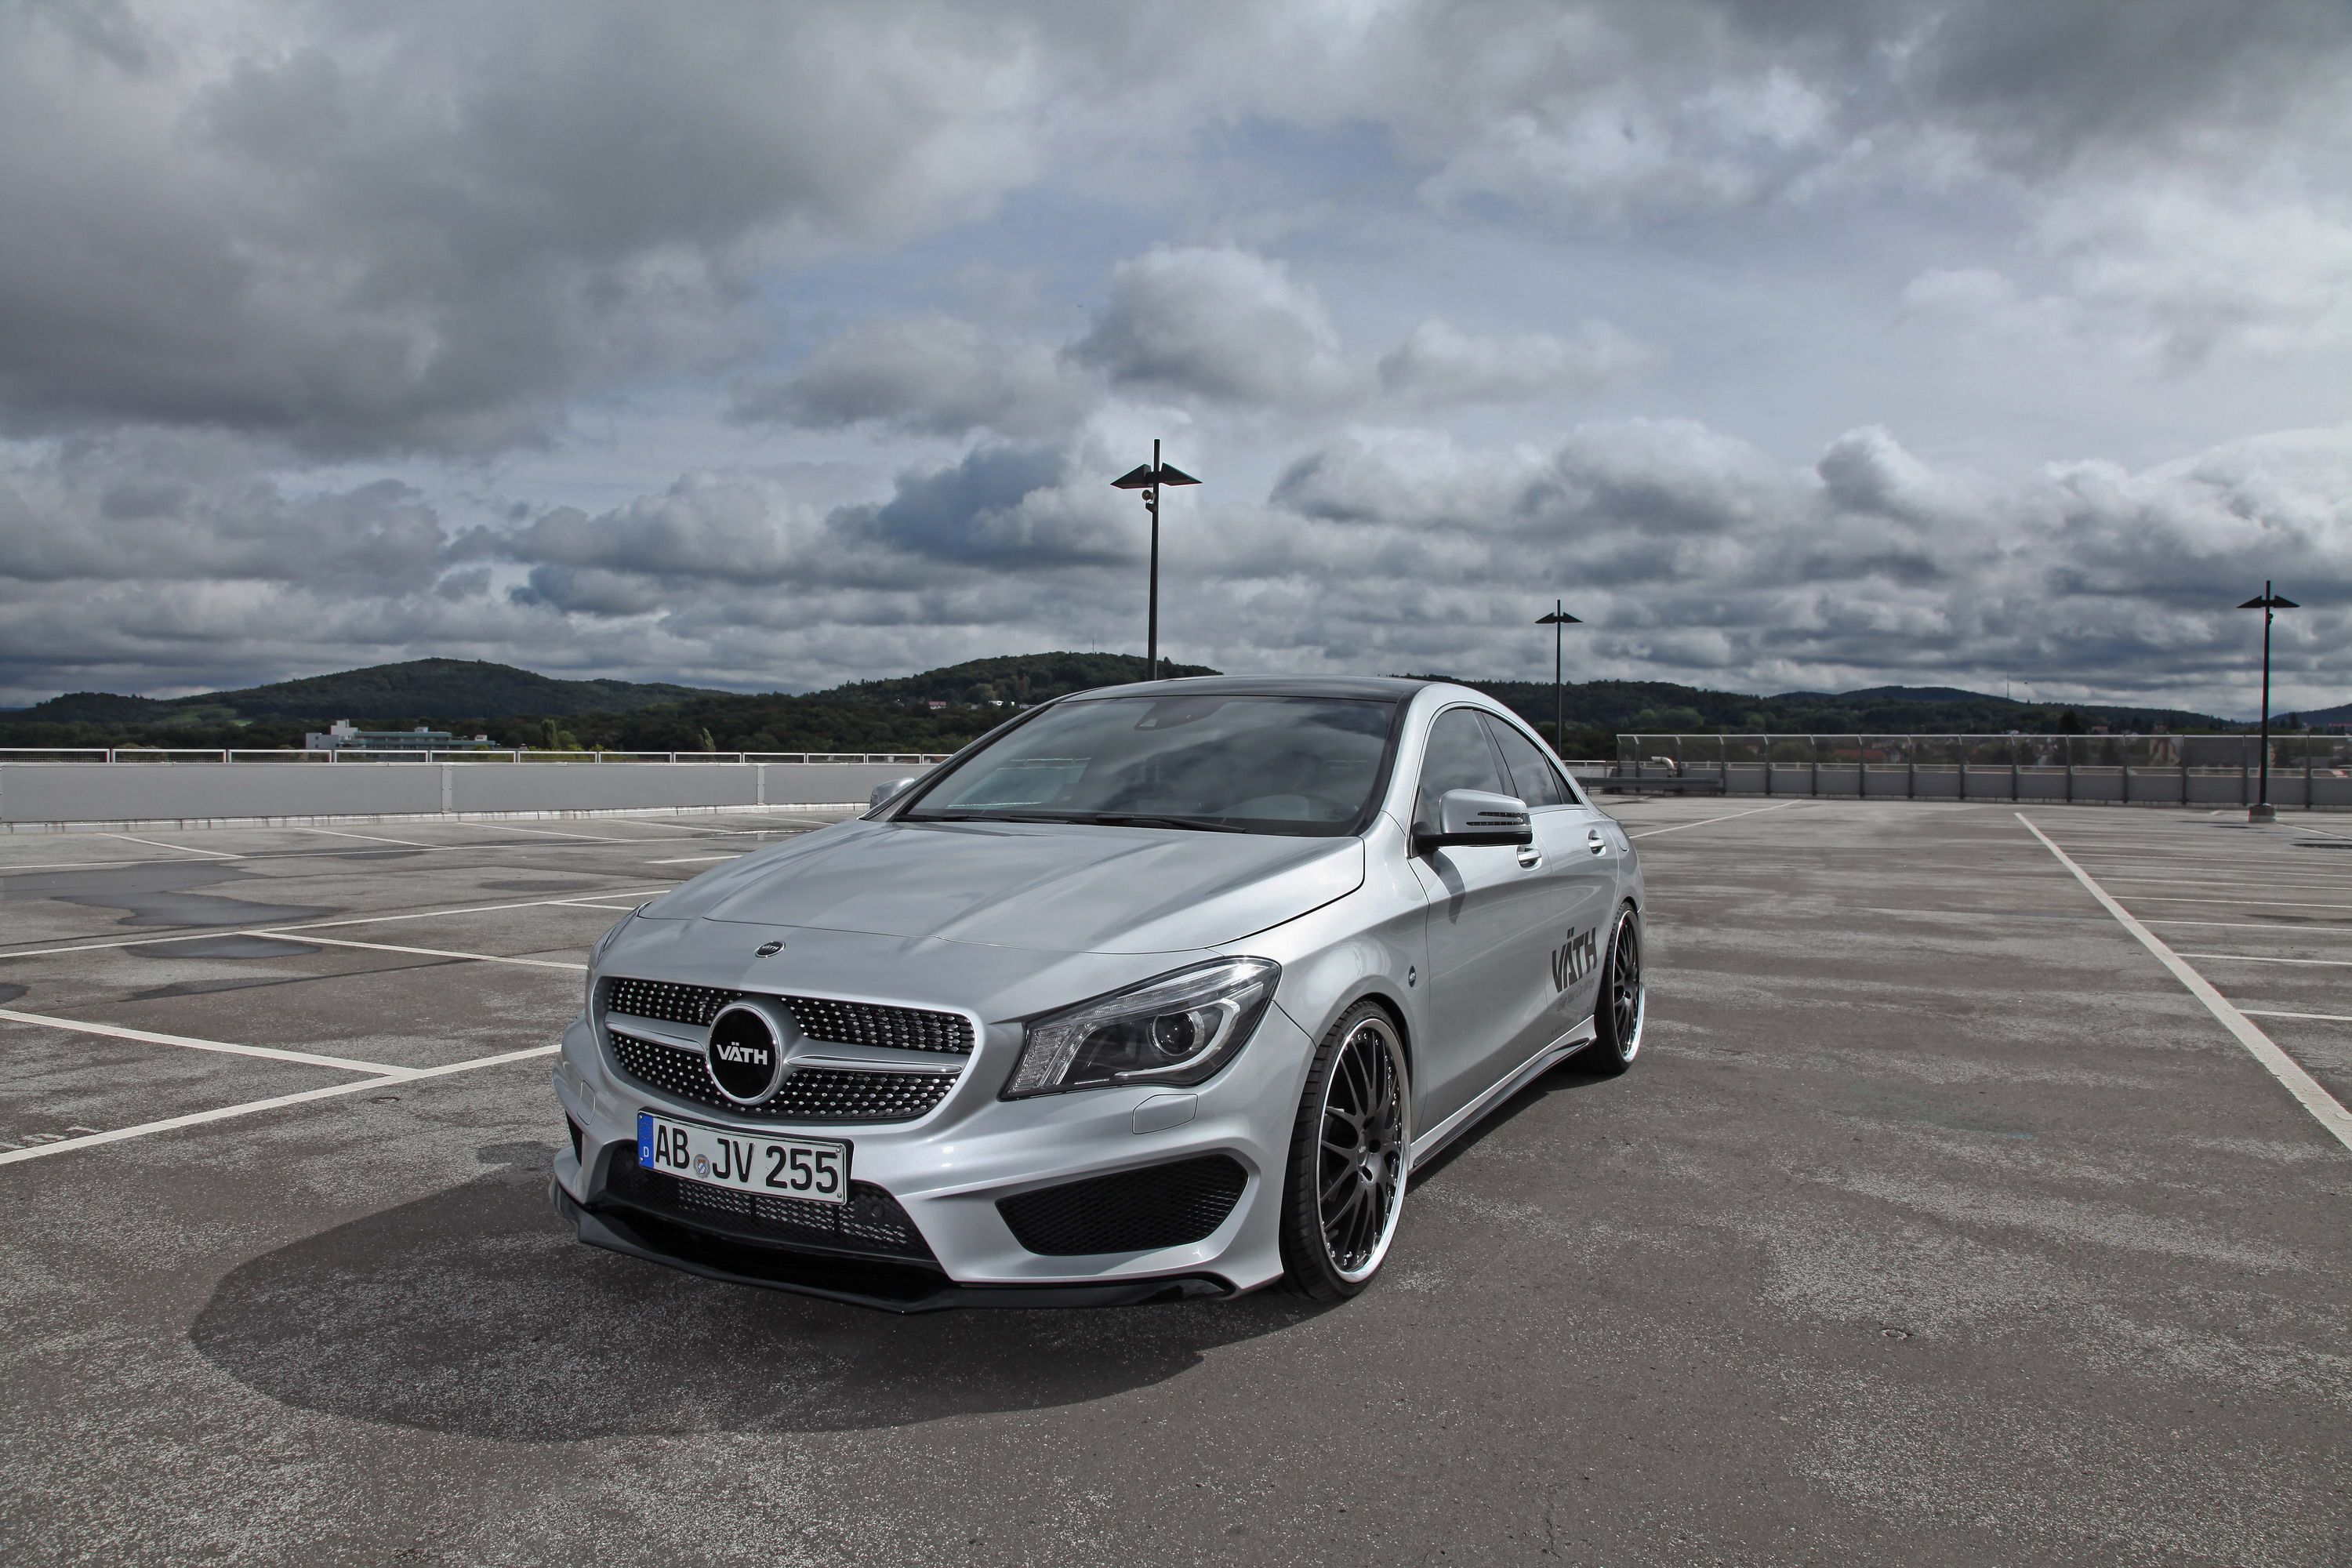 2014 Mercedes-Benz CLA-Class by Vath